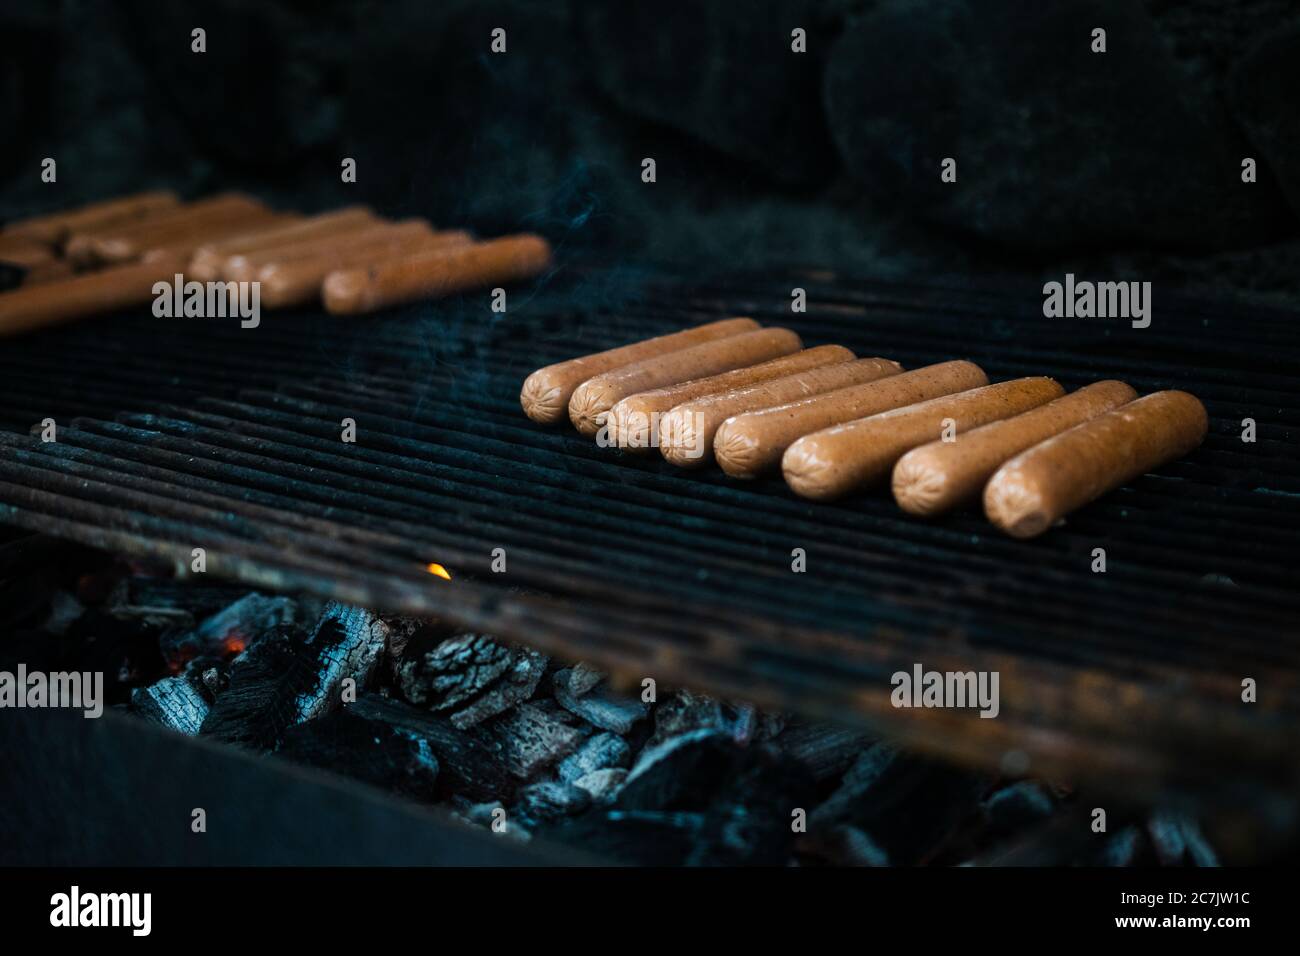 Beaucoup de hot dogs étant cuits dans un grill avec un arrière-plan flou Banque D'Images